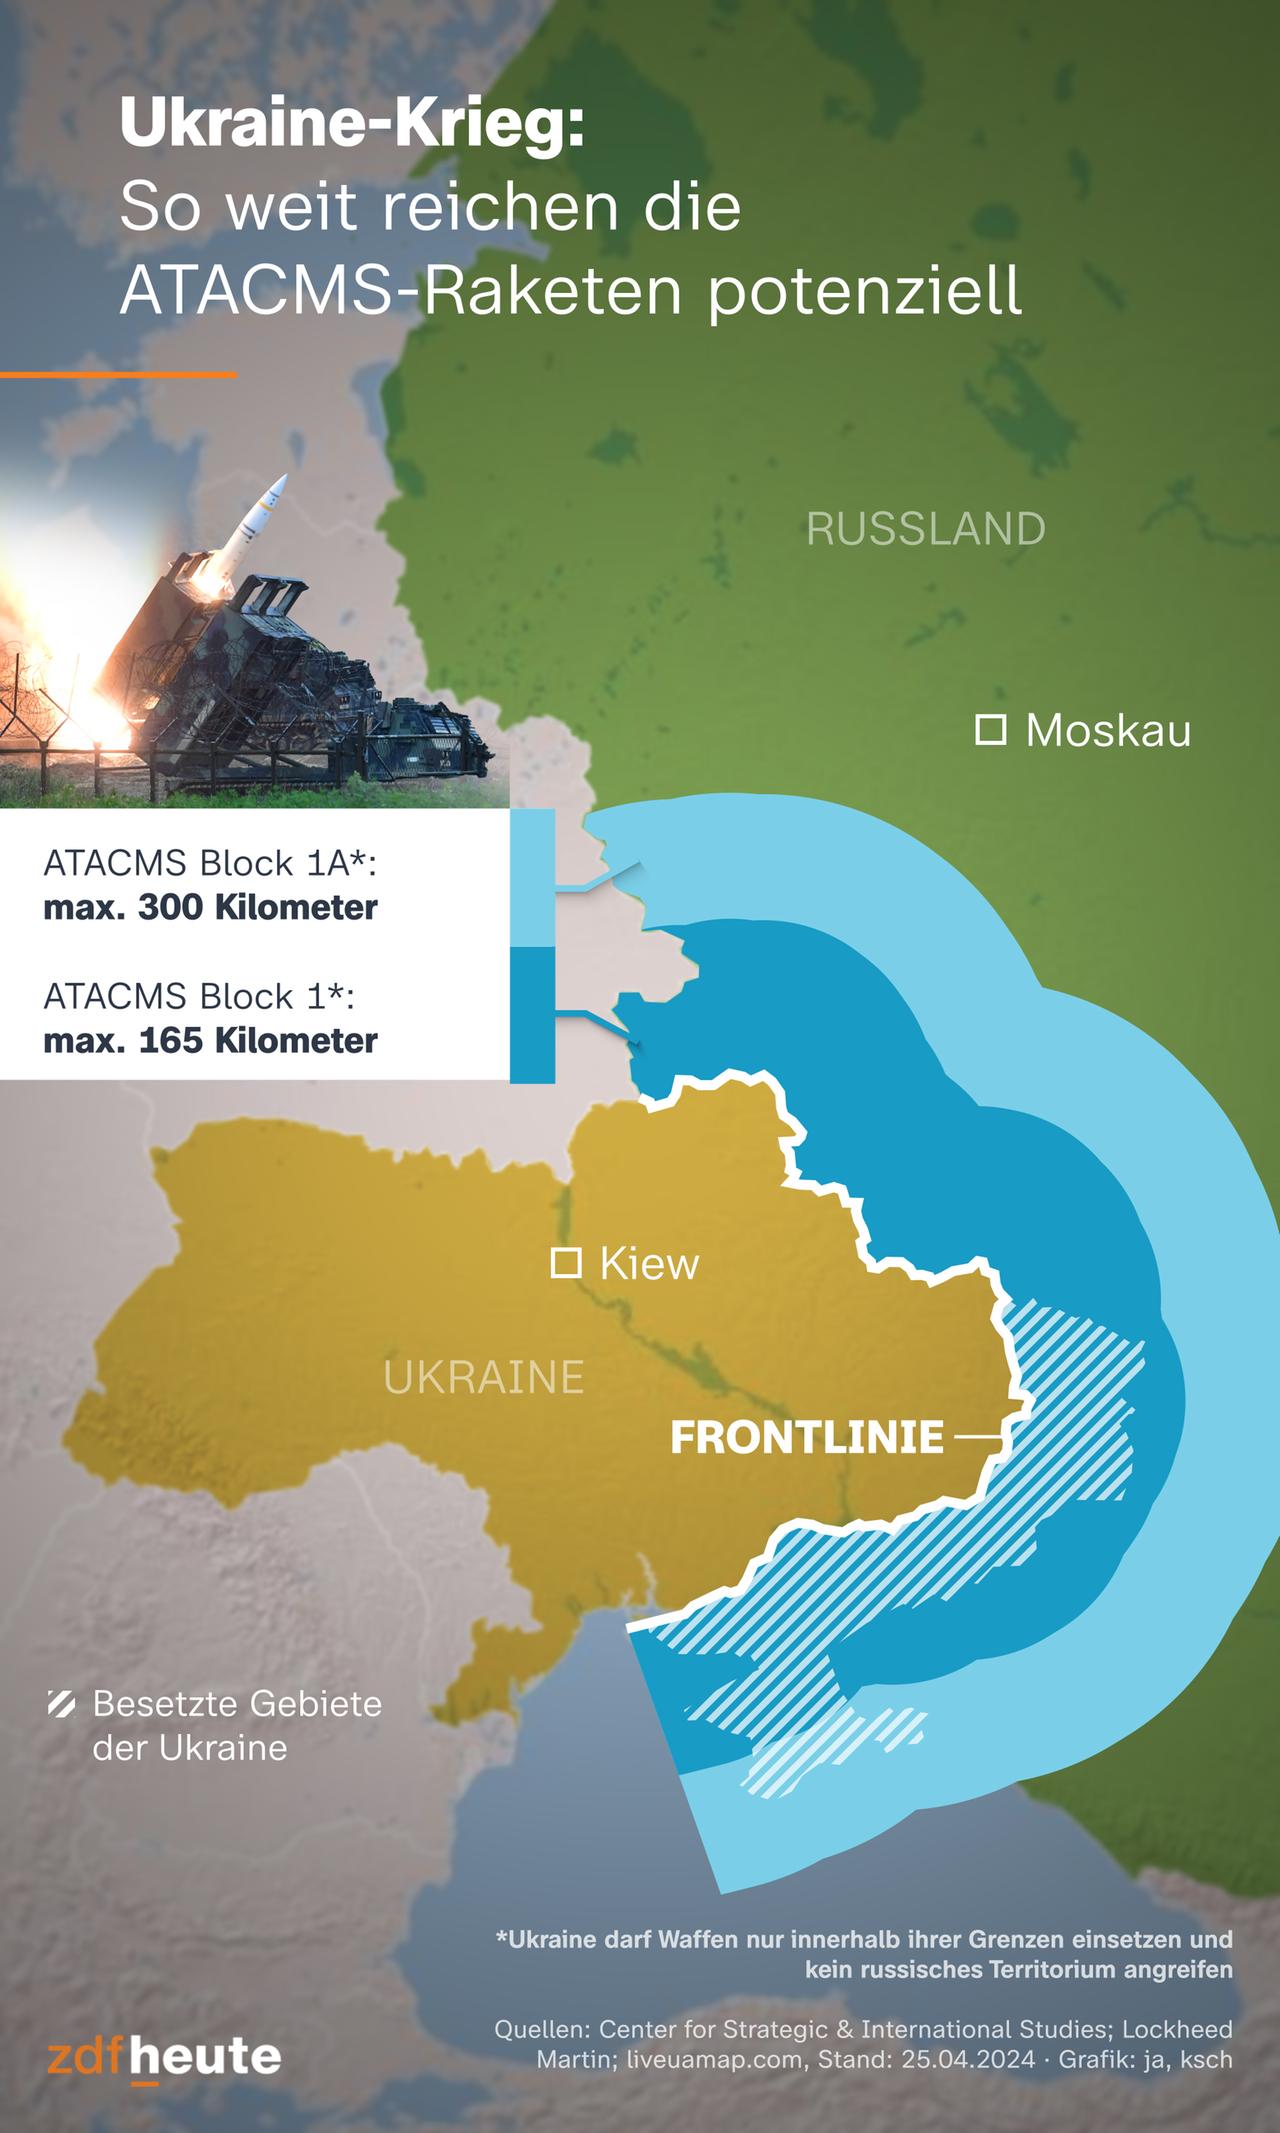 Die USA liefern der Ukraine ATACMS-Raketen mit einer Reichweite von bis zu 300 Kilometern. Die Karte zeigt, dass die Ukraine damit ihr ganzes von Russland besetztes Territorium angreifen kann.